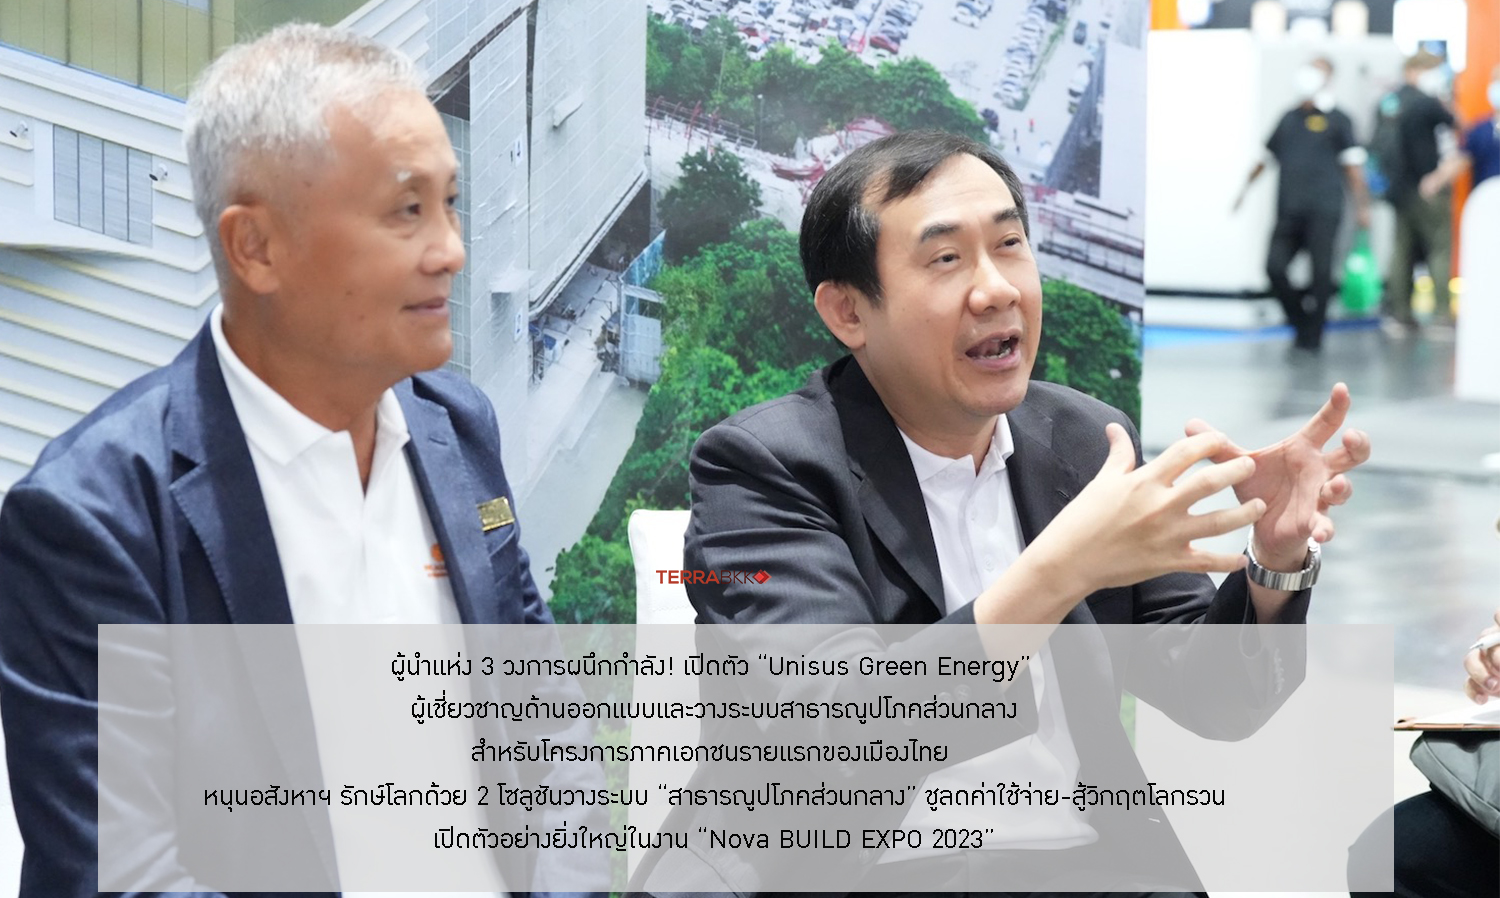 ผู้นำแห่ง 3 วงการผนึกกำลัง! เปิดตัว “Unisus Green Energy”  ผู้เชี่ยวชาญด้านออกแบบและวางระบบสาธารณูปโภคส่วนกลาง สำหรับโครงการภาคเอกชนรายแรกของเมืองไทย 